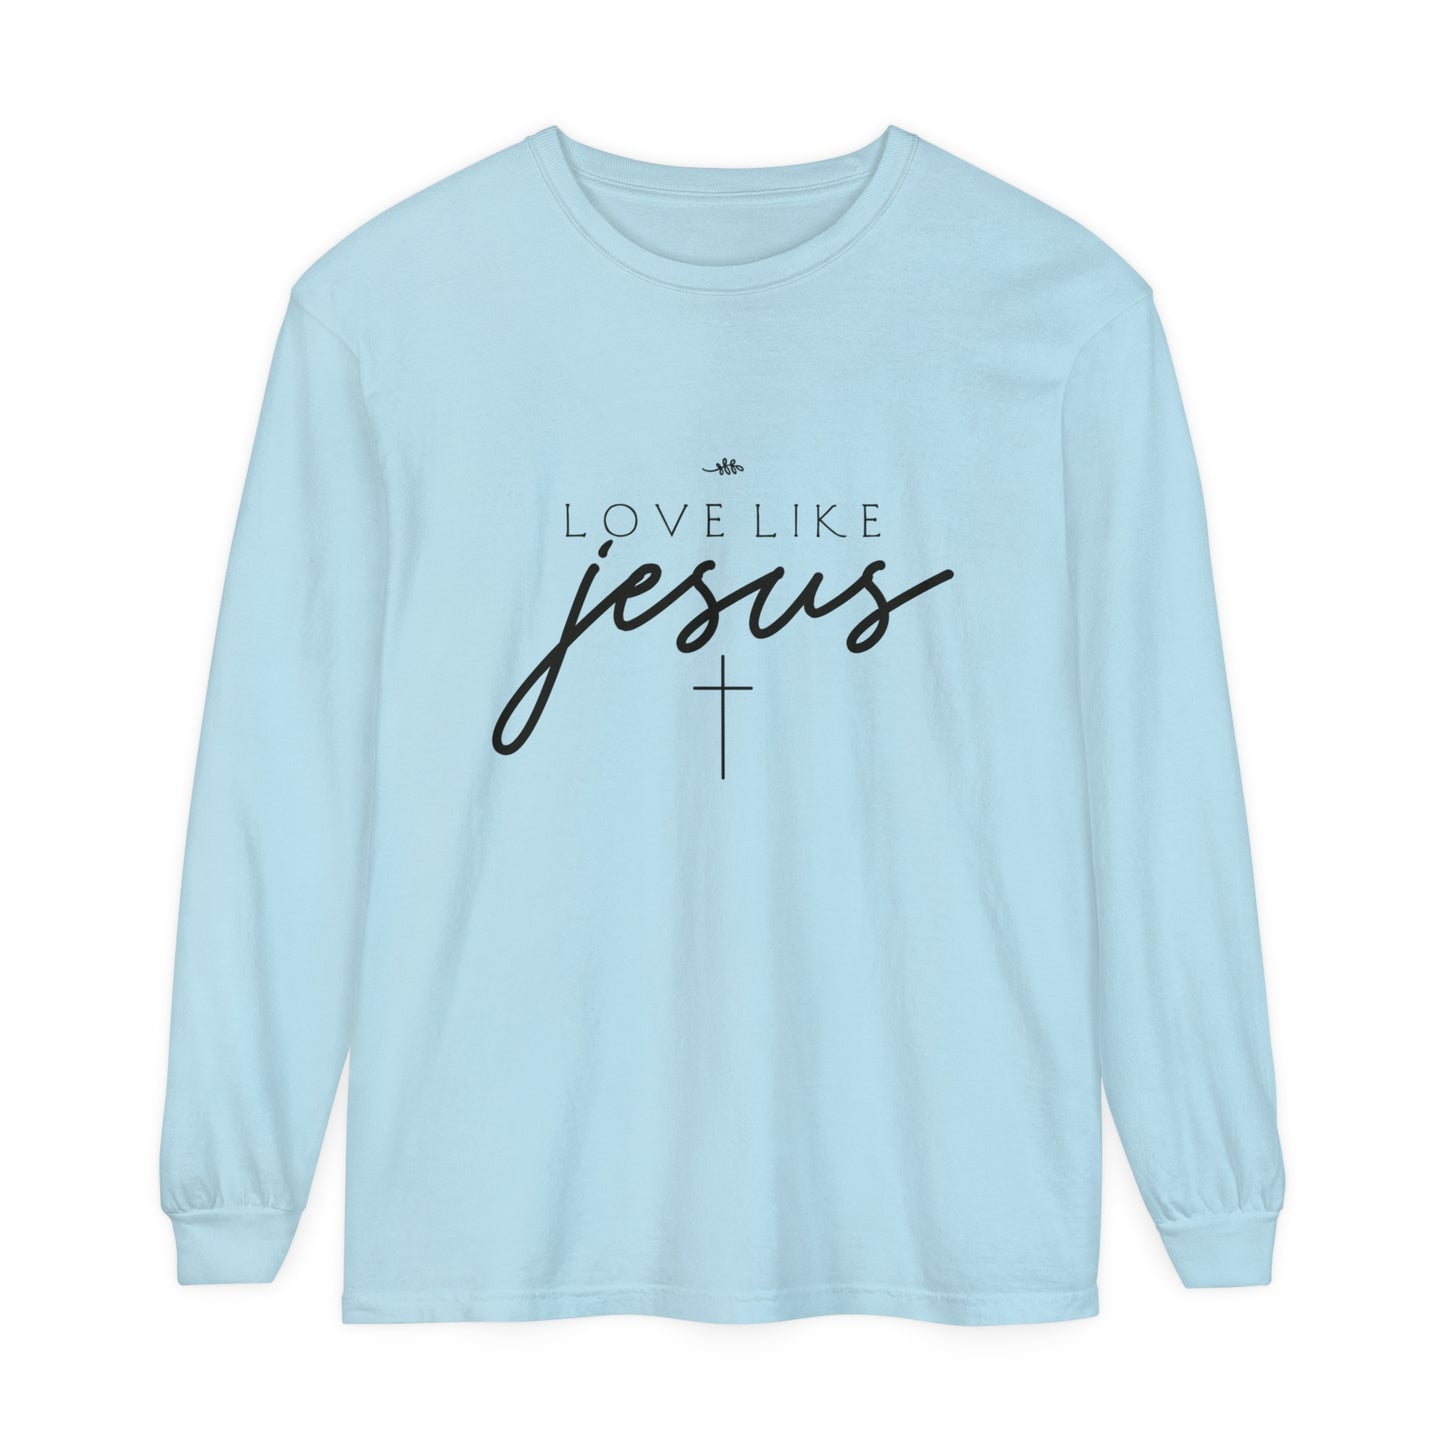 Love Like Jesus Women's Loose Long Sleeve T-Shirt